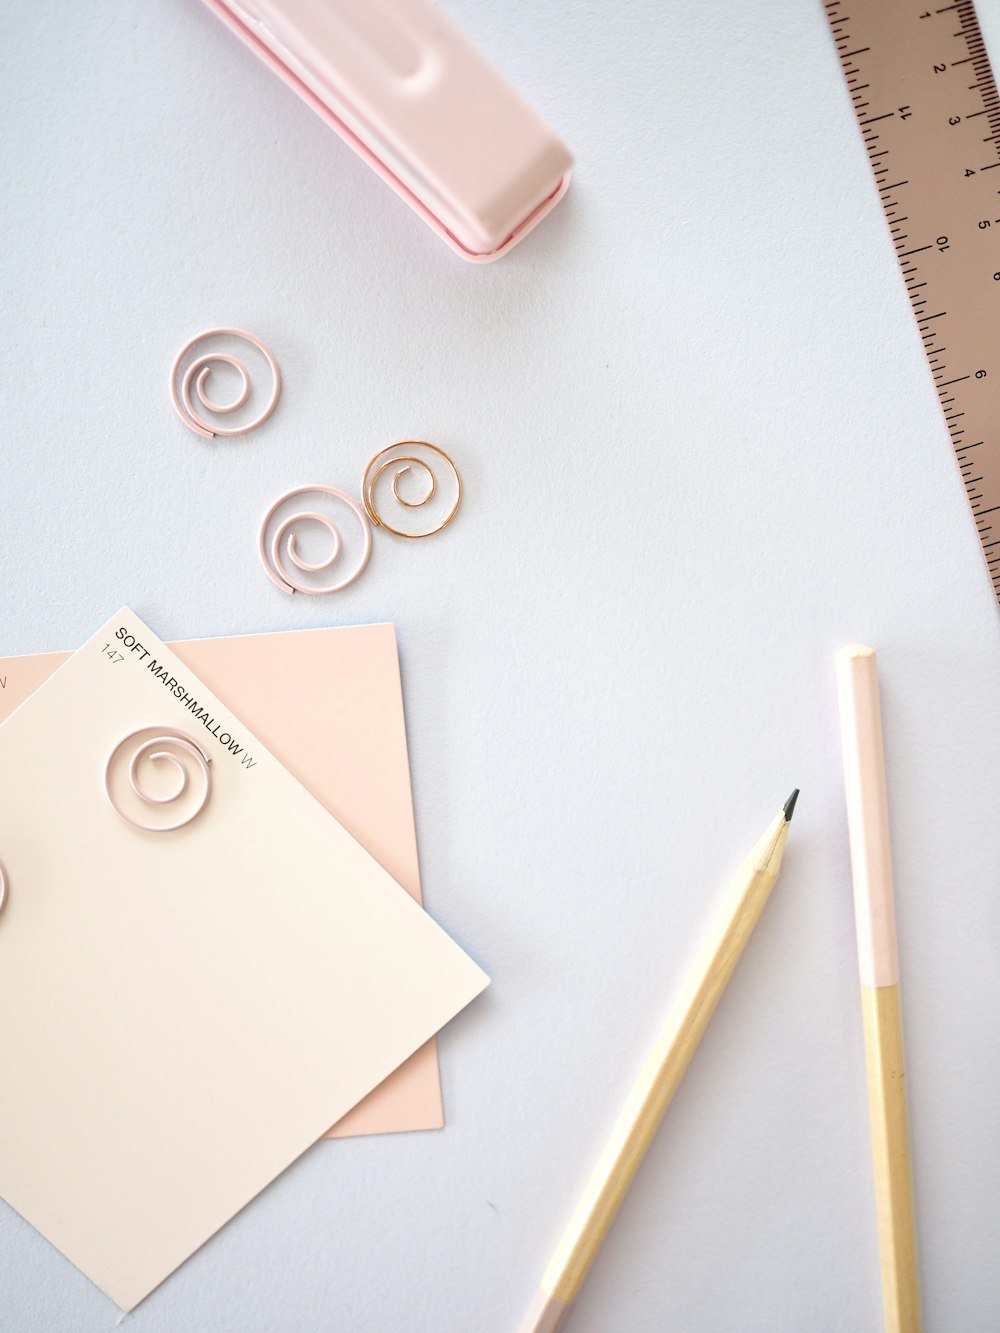 Weißes Druckerpapier neben weißen und goldenen Buntstiften und weißem und rosa Klebeband